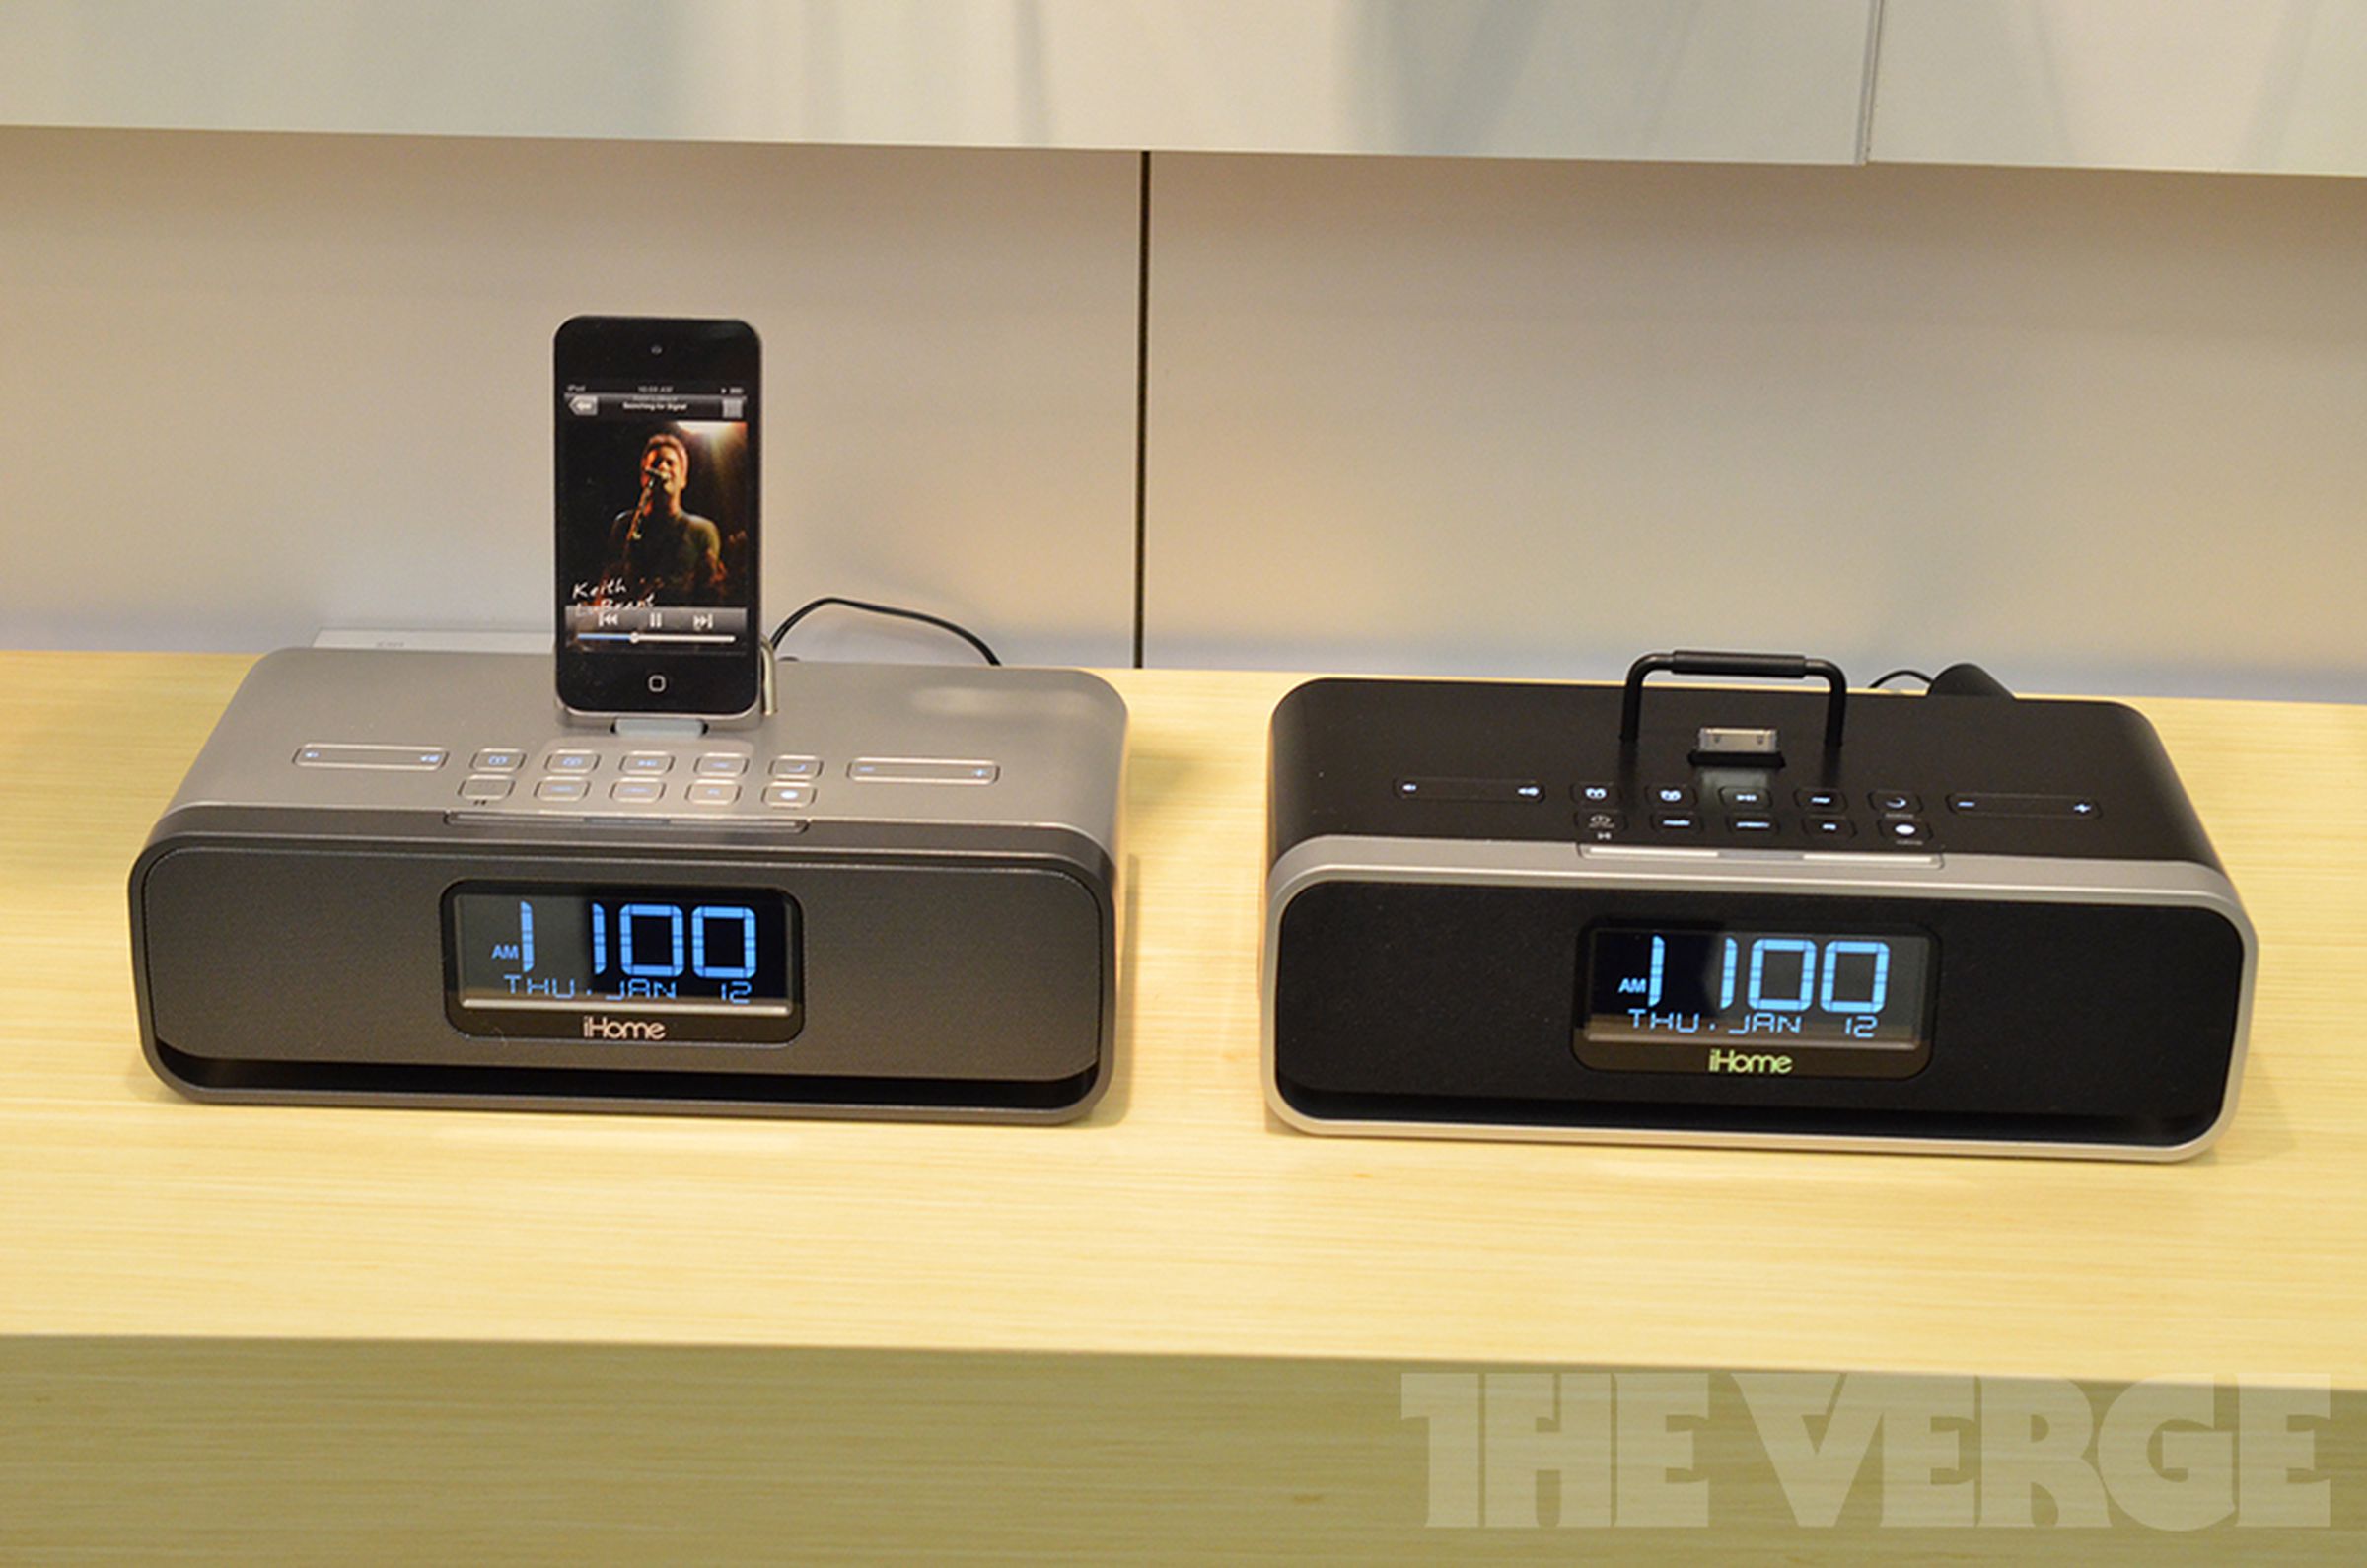 iHome iD91 iPhone, iPad, and iPod alarm clock hands-on photos